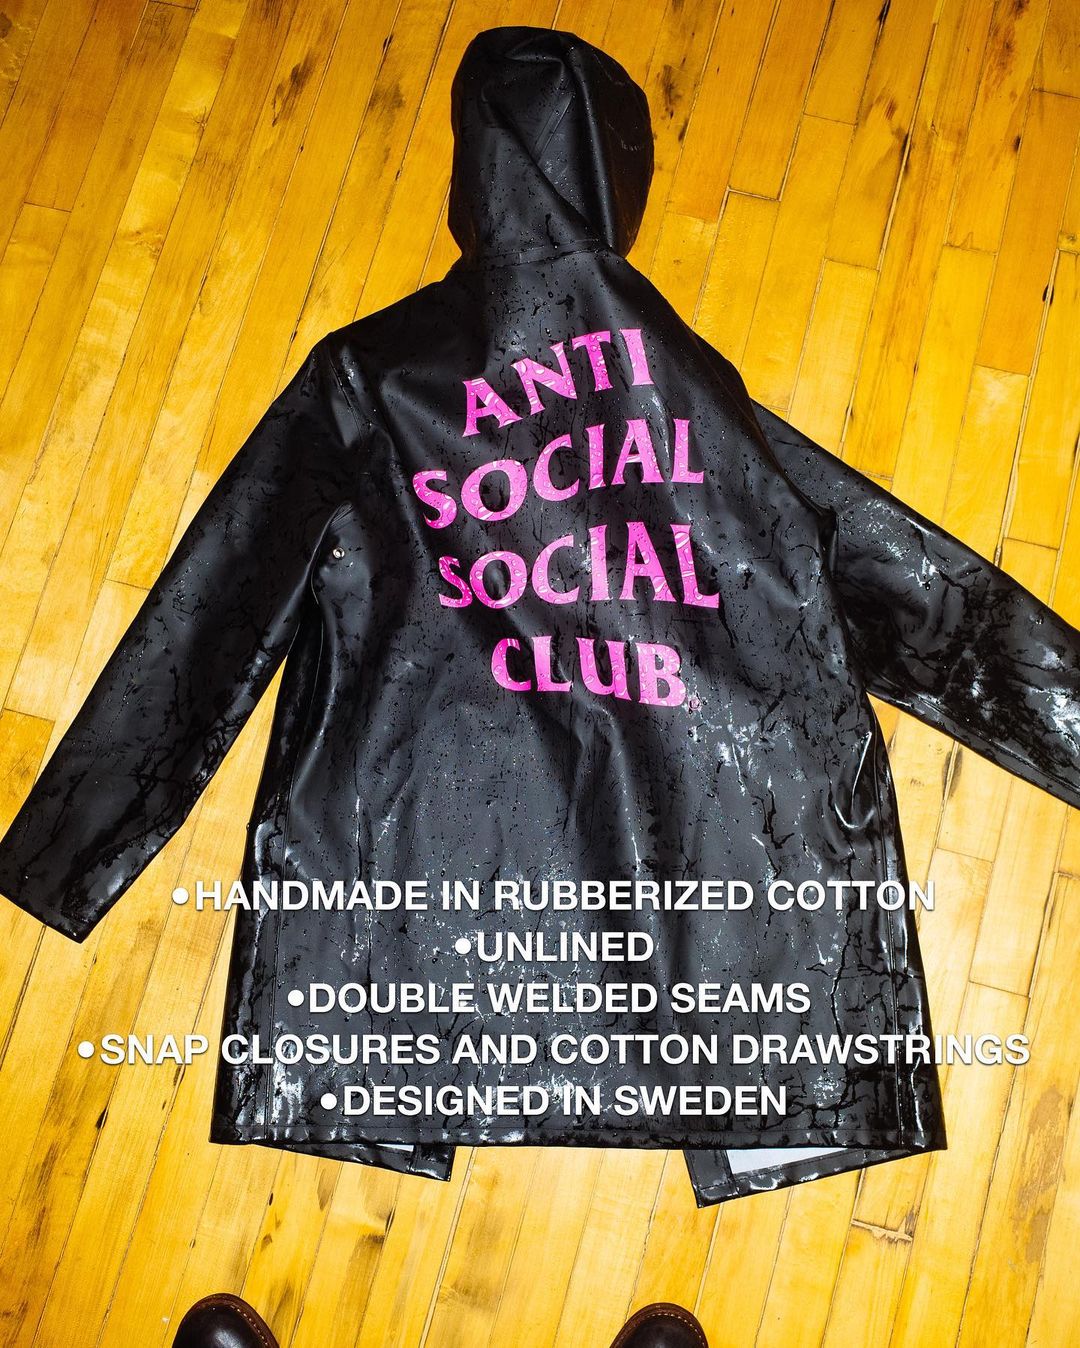 【3/13 発売】Anti Social Social Club × STUTTERHEIM (アンチ ソーシャル ソーシャル クラブ ストゥッテルハイム)